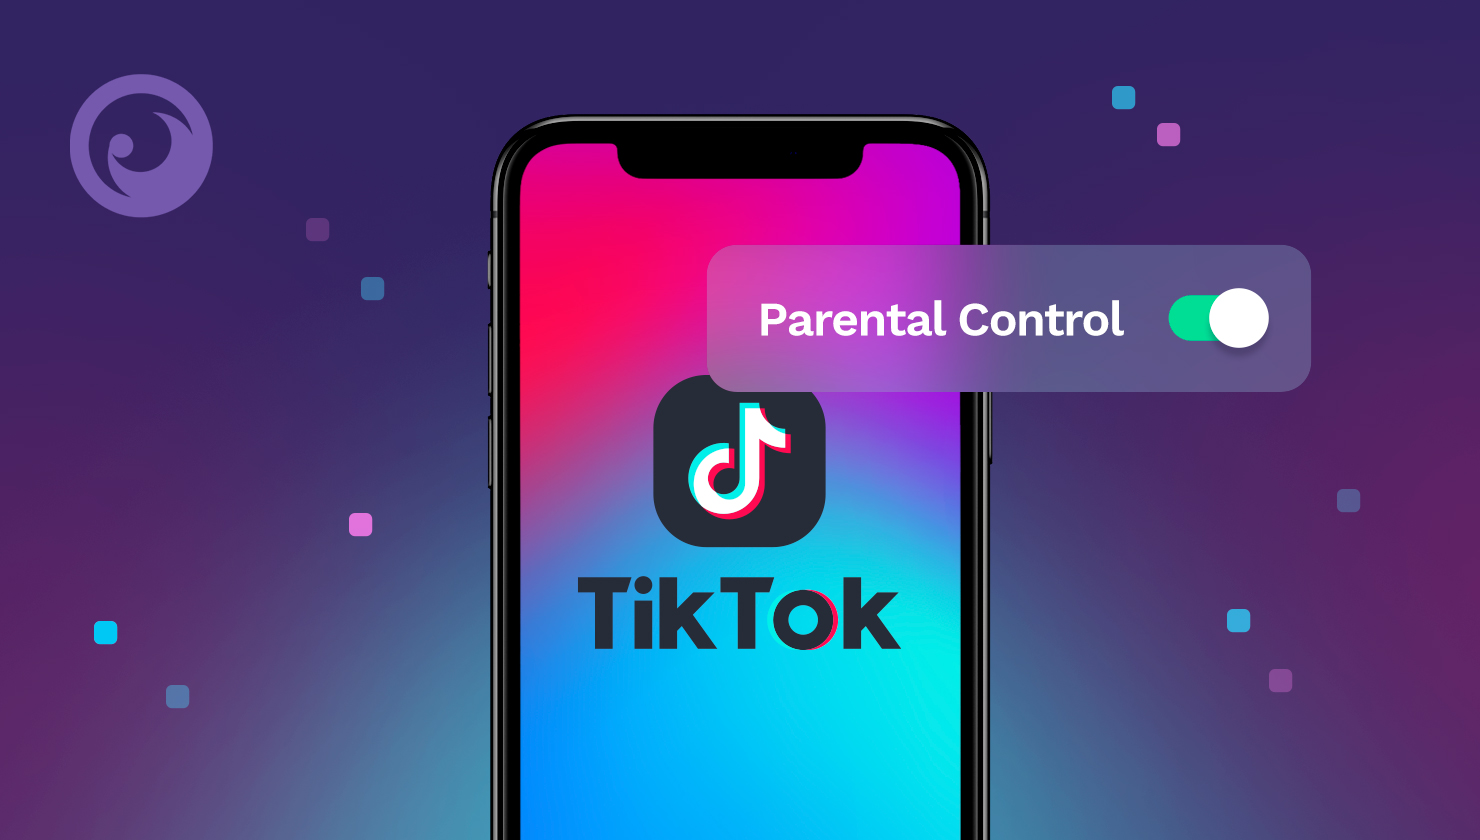 TikTok parental controls